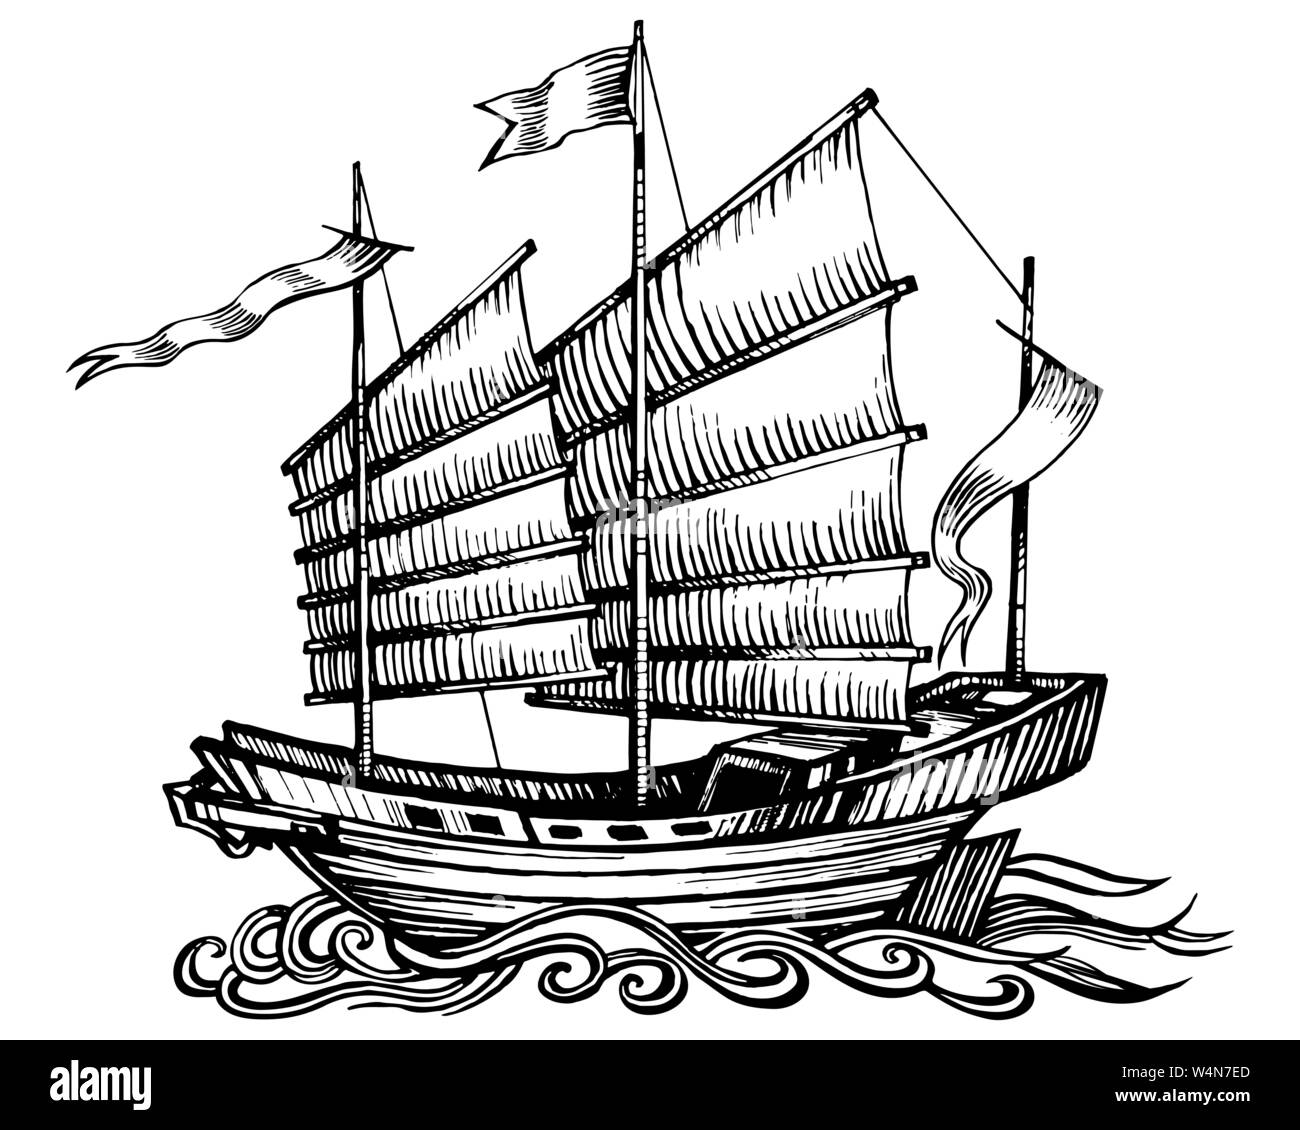 Chinesische Piraten Segelboot junk Stock Vektor